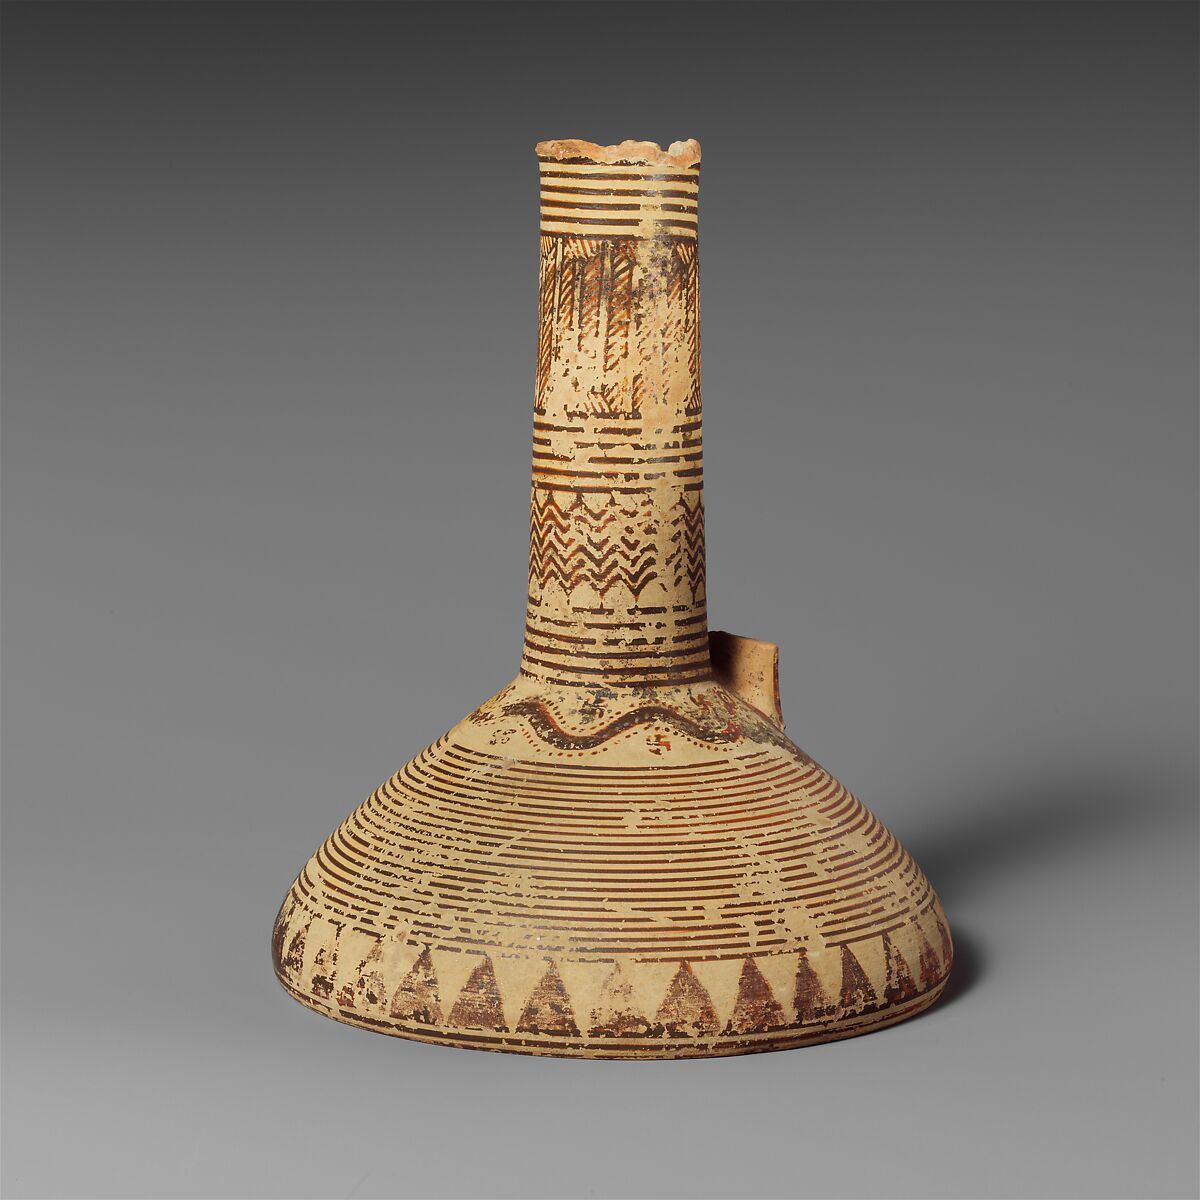 Terracotta oinochoe (jug), Terracotta, Greek, Corinthian 